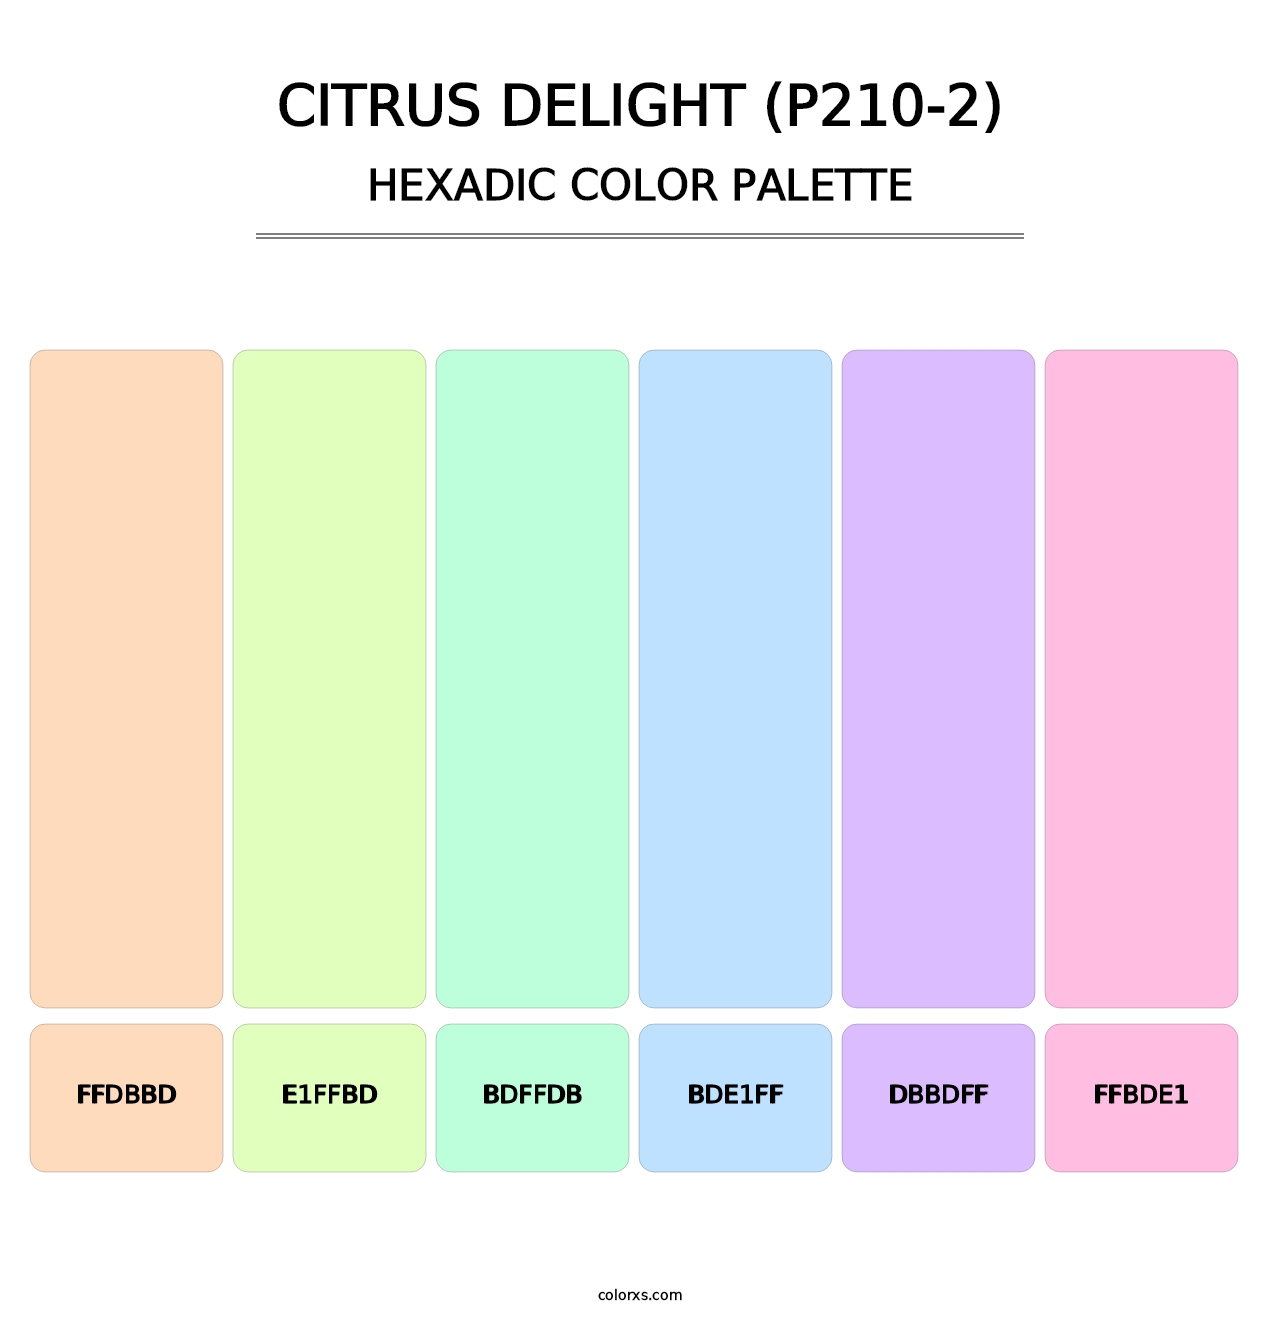 Citrus Delight (P210-2) - Hexadic Color Palette